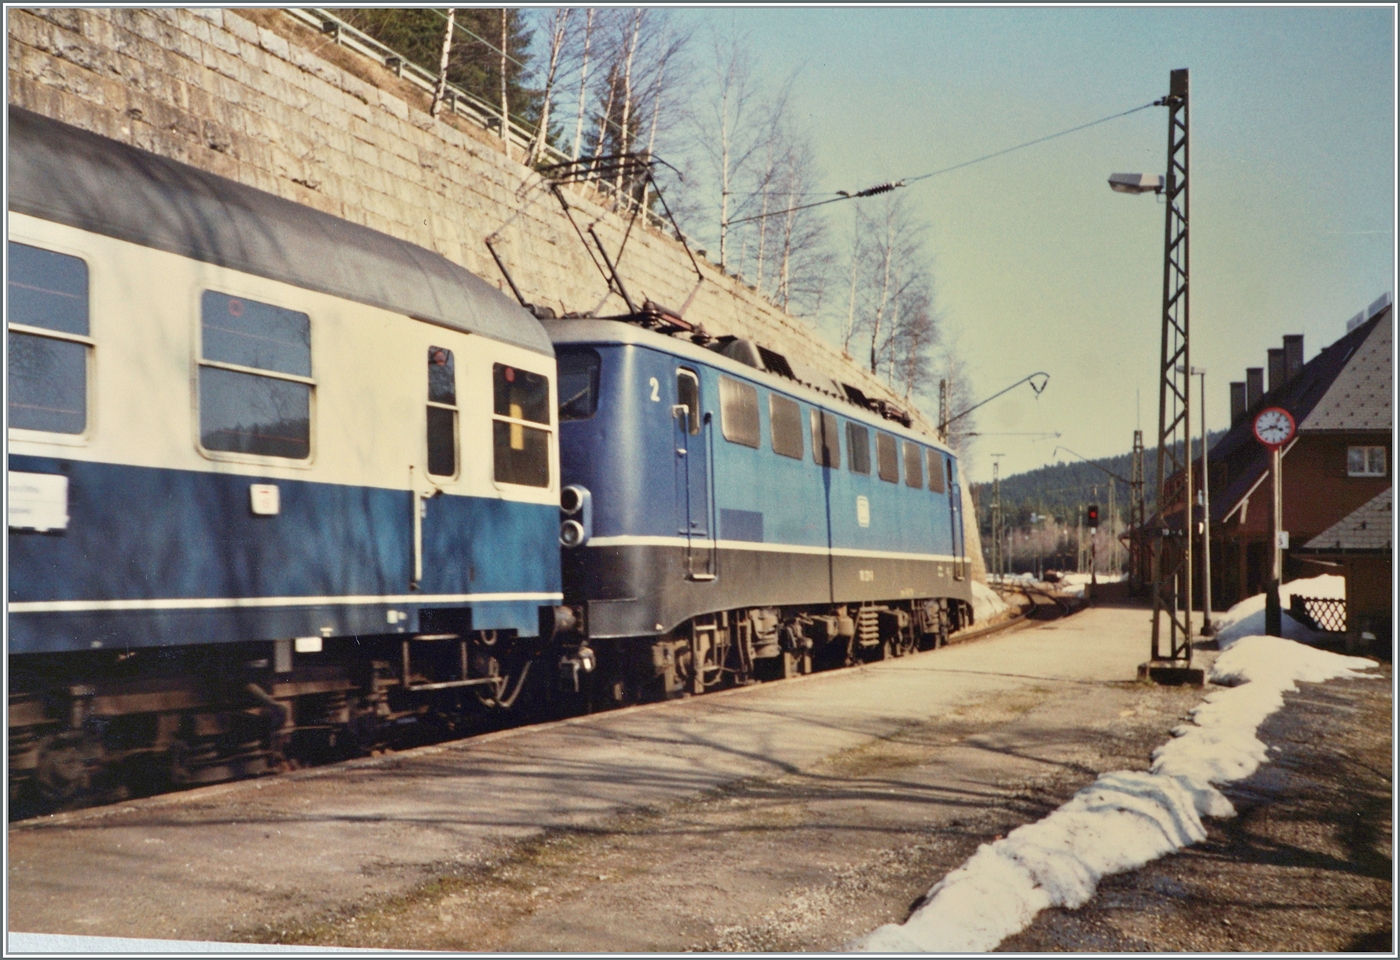 Die DB 110 221-9 hat mit ihrem FD 703 von Münter (Westfallen) kommend den Zielbahnhof Seebrugg erreicht. Da Seebrugg nur über einen Bahnsteig verfügt und die Rückleistung als FD 702 erst am Folgetag erfolgt, wird der Zug in der relativ grossen Abstellanlage des Bahnhof abgestellt. 

Analogbild vom April 1988